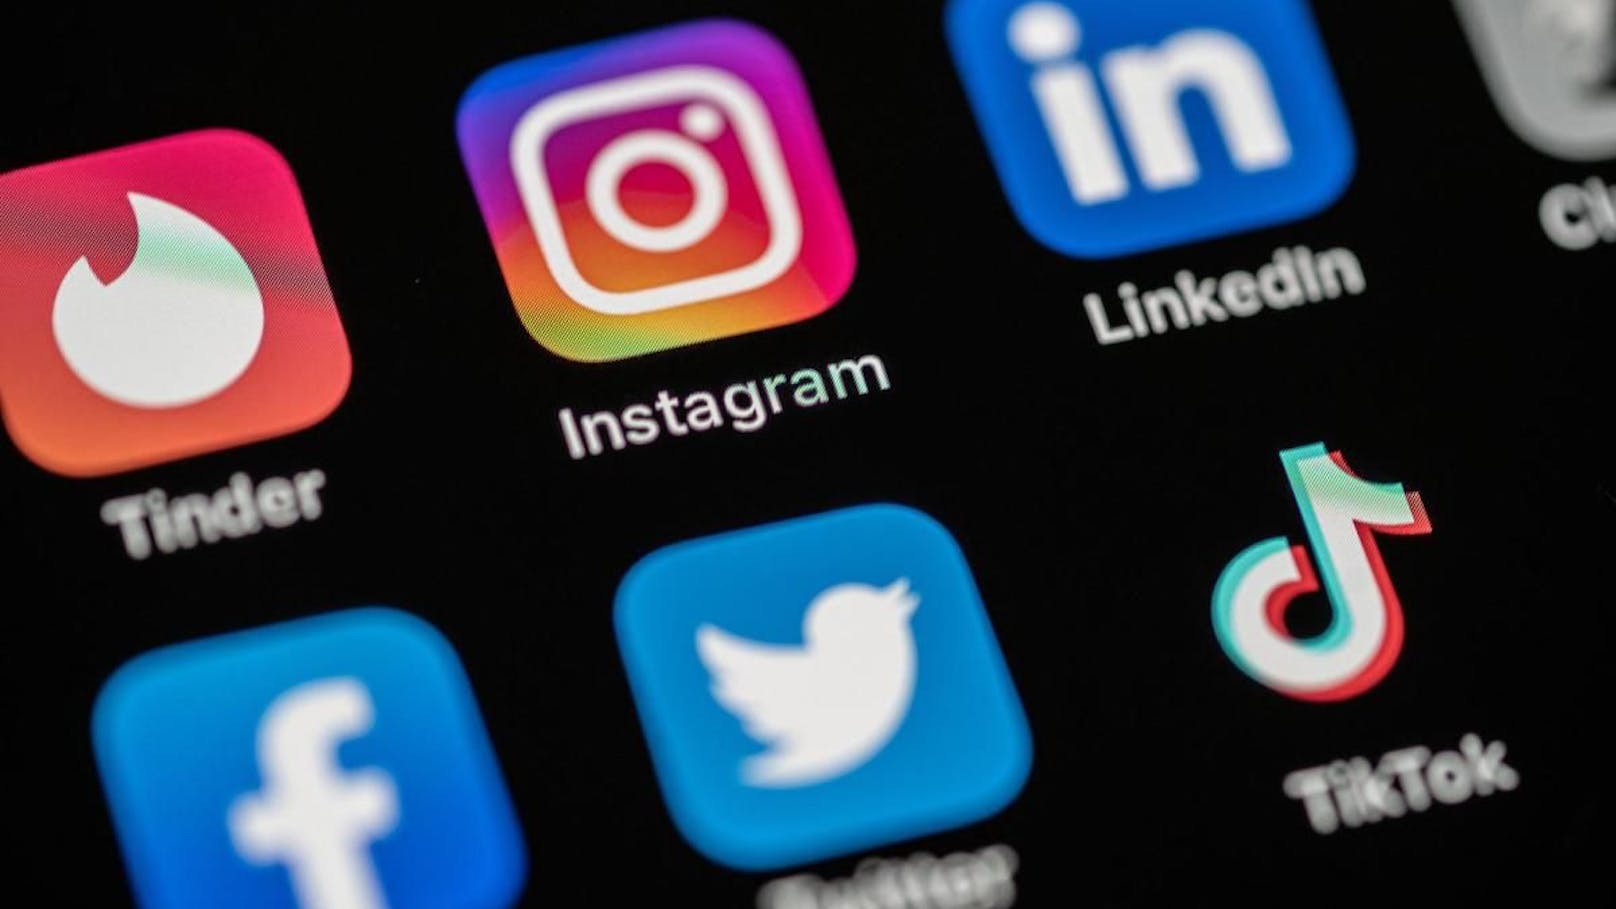 Das Wall Street Journal enthüllt besorgniserregende Studien über minderjährige Nutzer von Instagram.